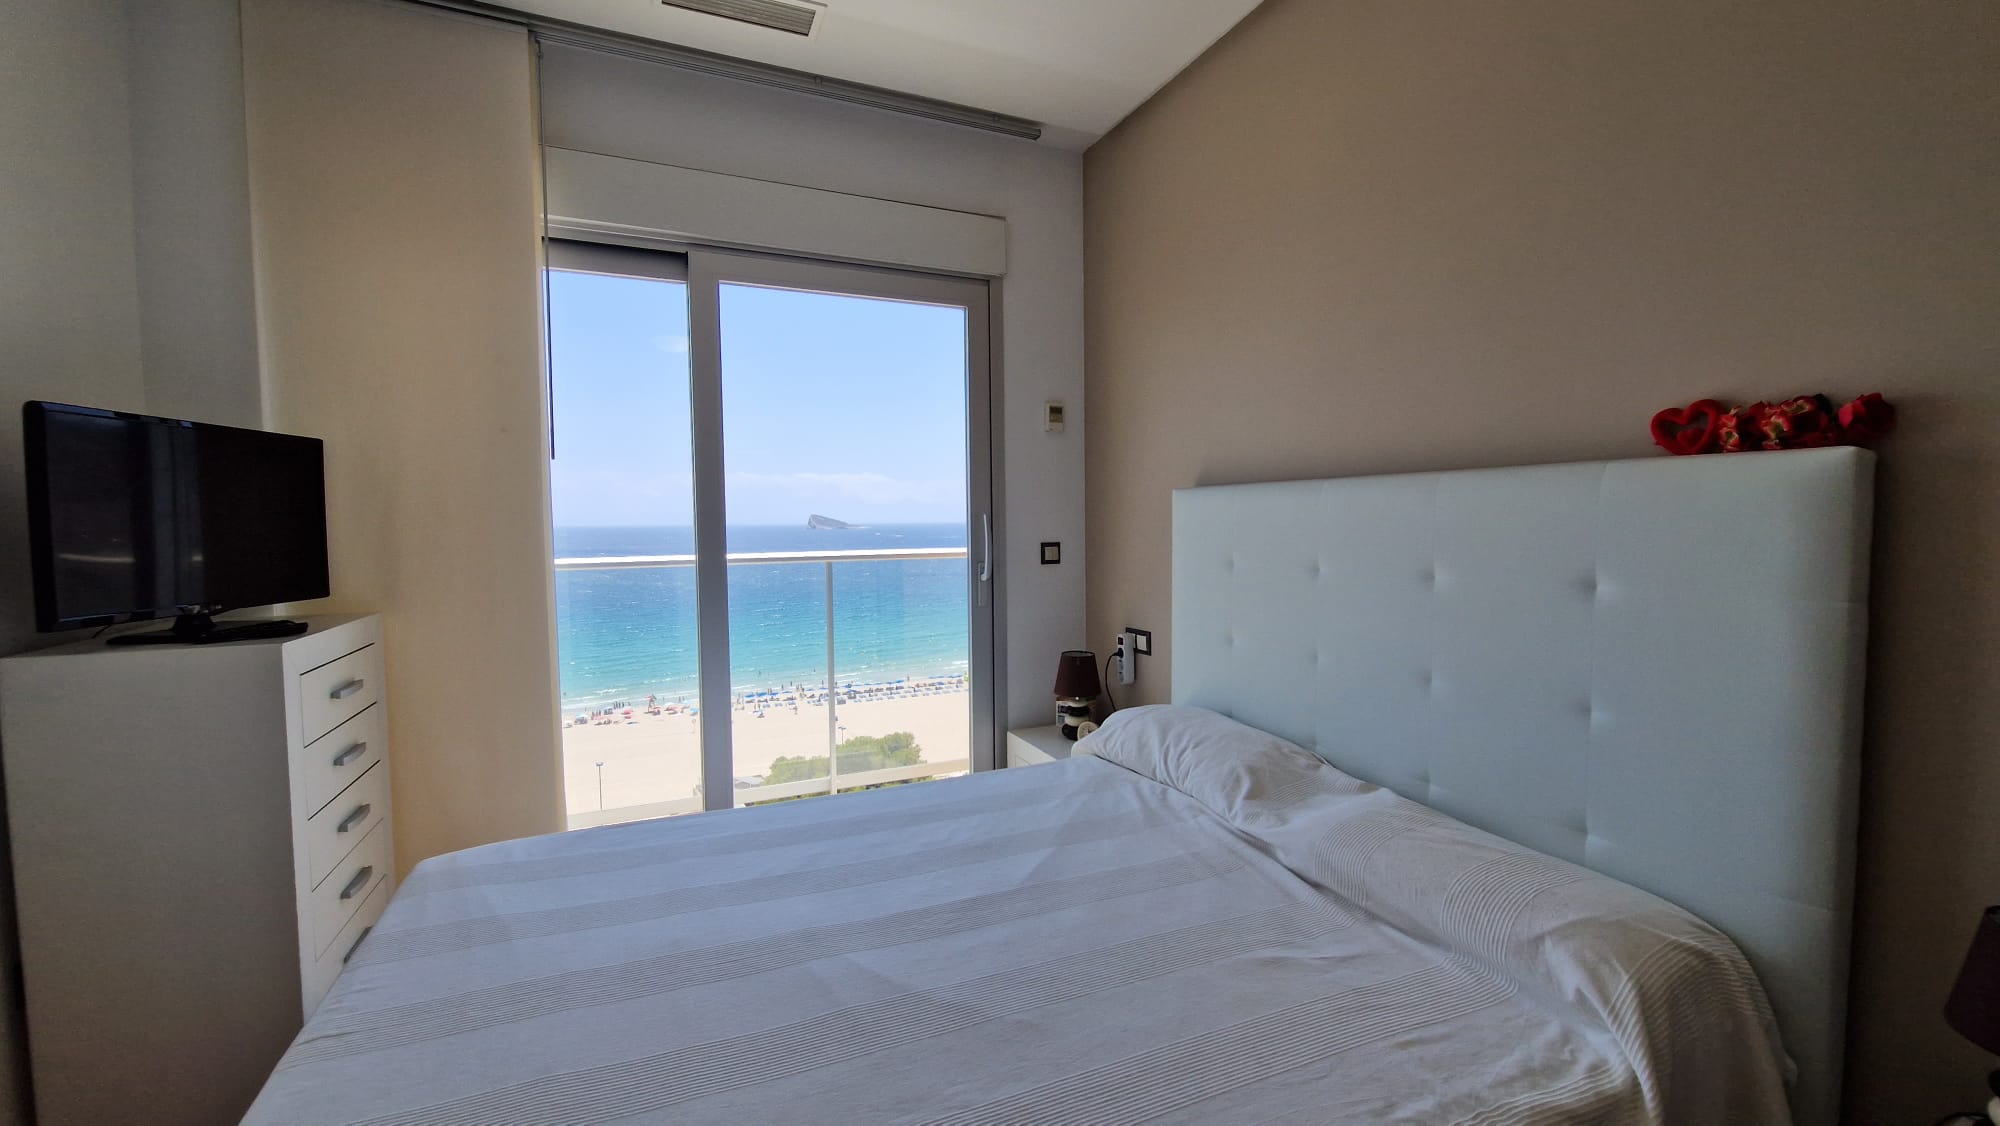 Frontline Beach Apartment Benidorm: Uw ideale ervaring aan de kust